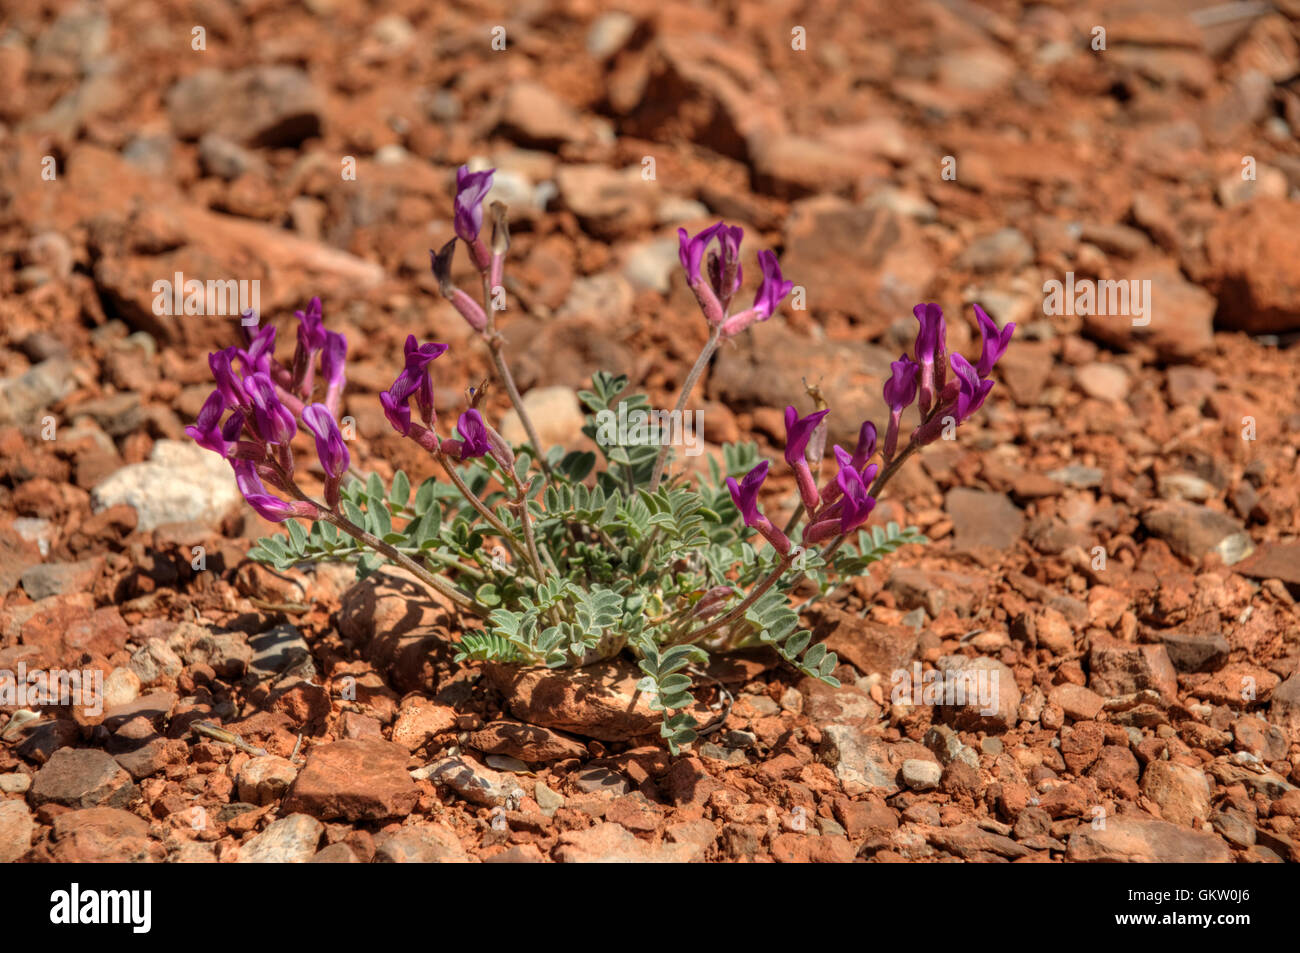 A locoweed aka Milkvetch (Astragalus, species unknown) growing in the Utah desert. Stock Photo